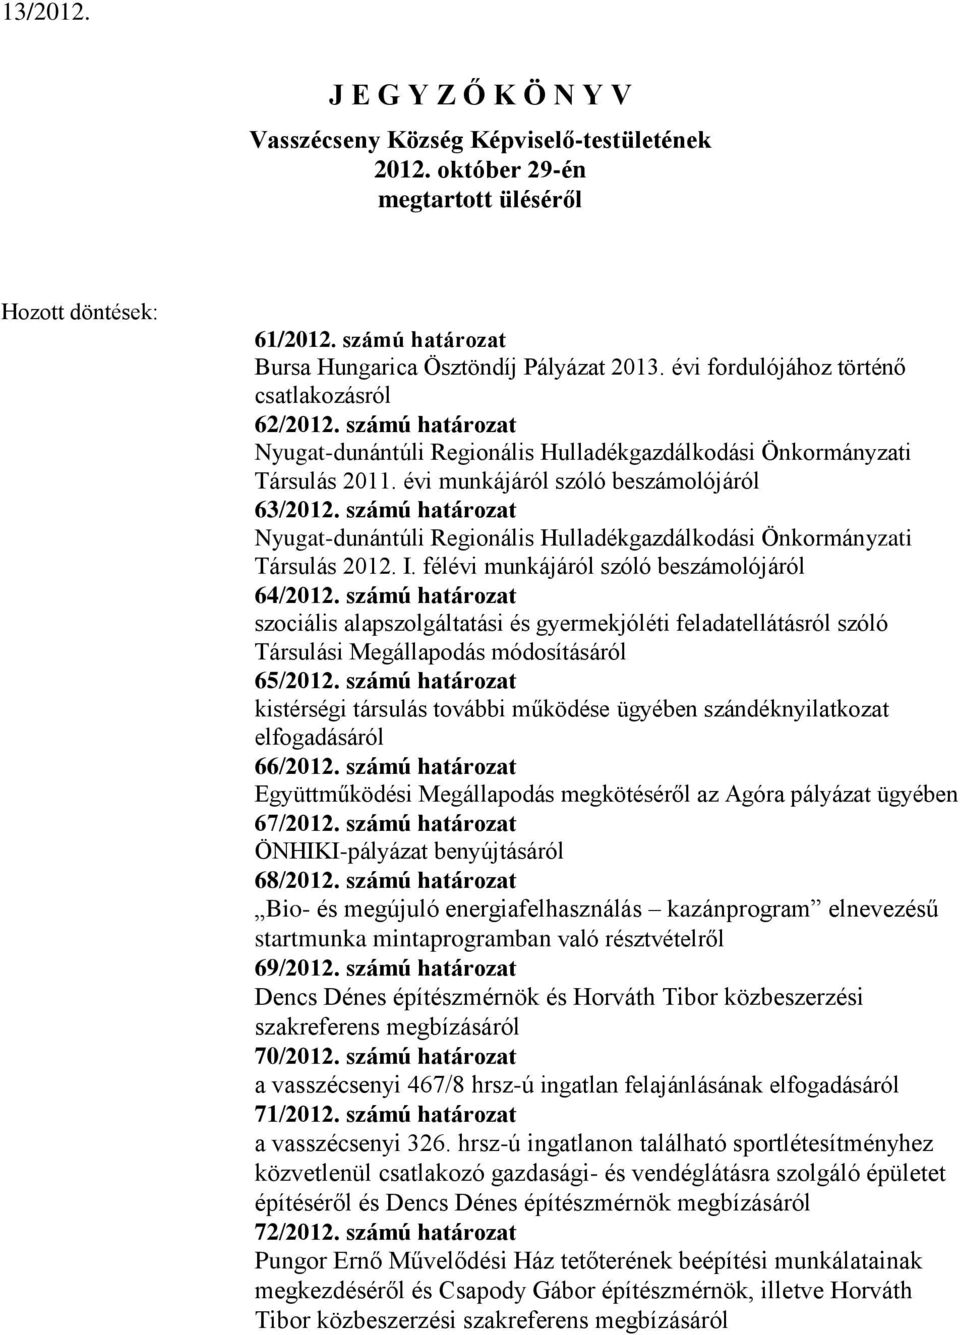 számú határozat Nyugat-dunántúli Regionális Hulladékgazdálkodási Önkormányzati Társulás 2012. I. félévi munkájáról szóló beszámolójáról 64/2012.